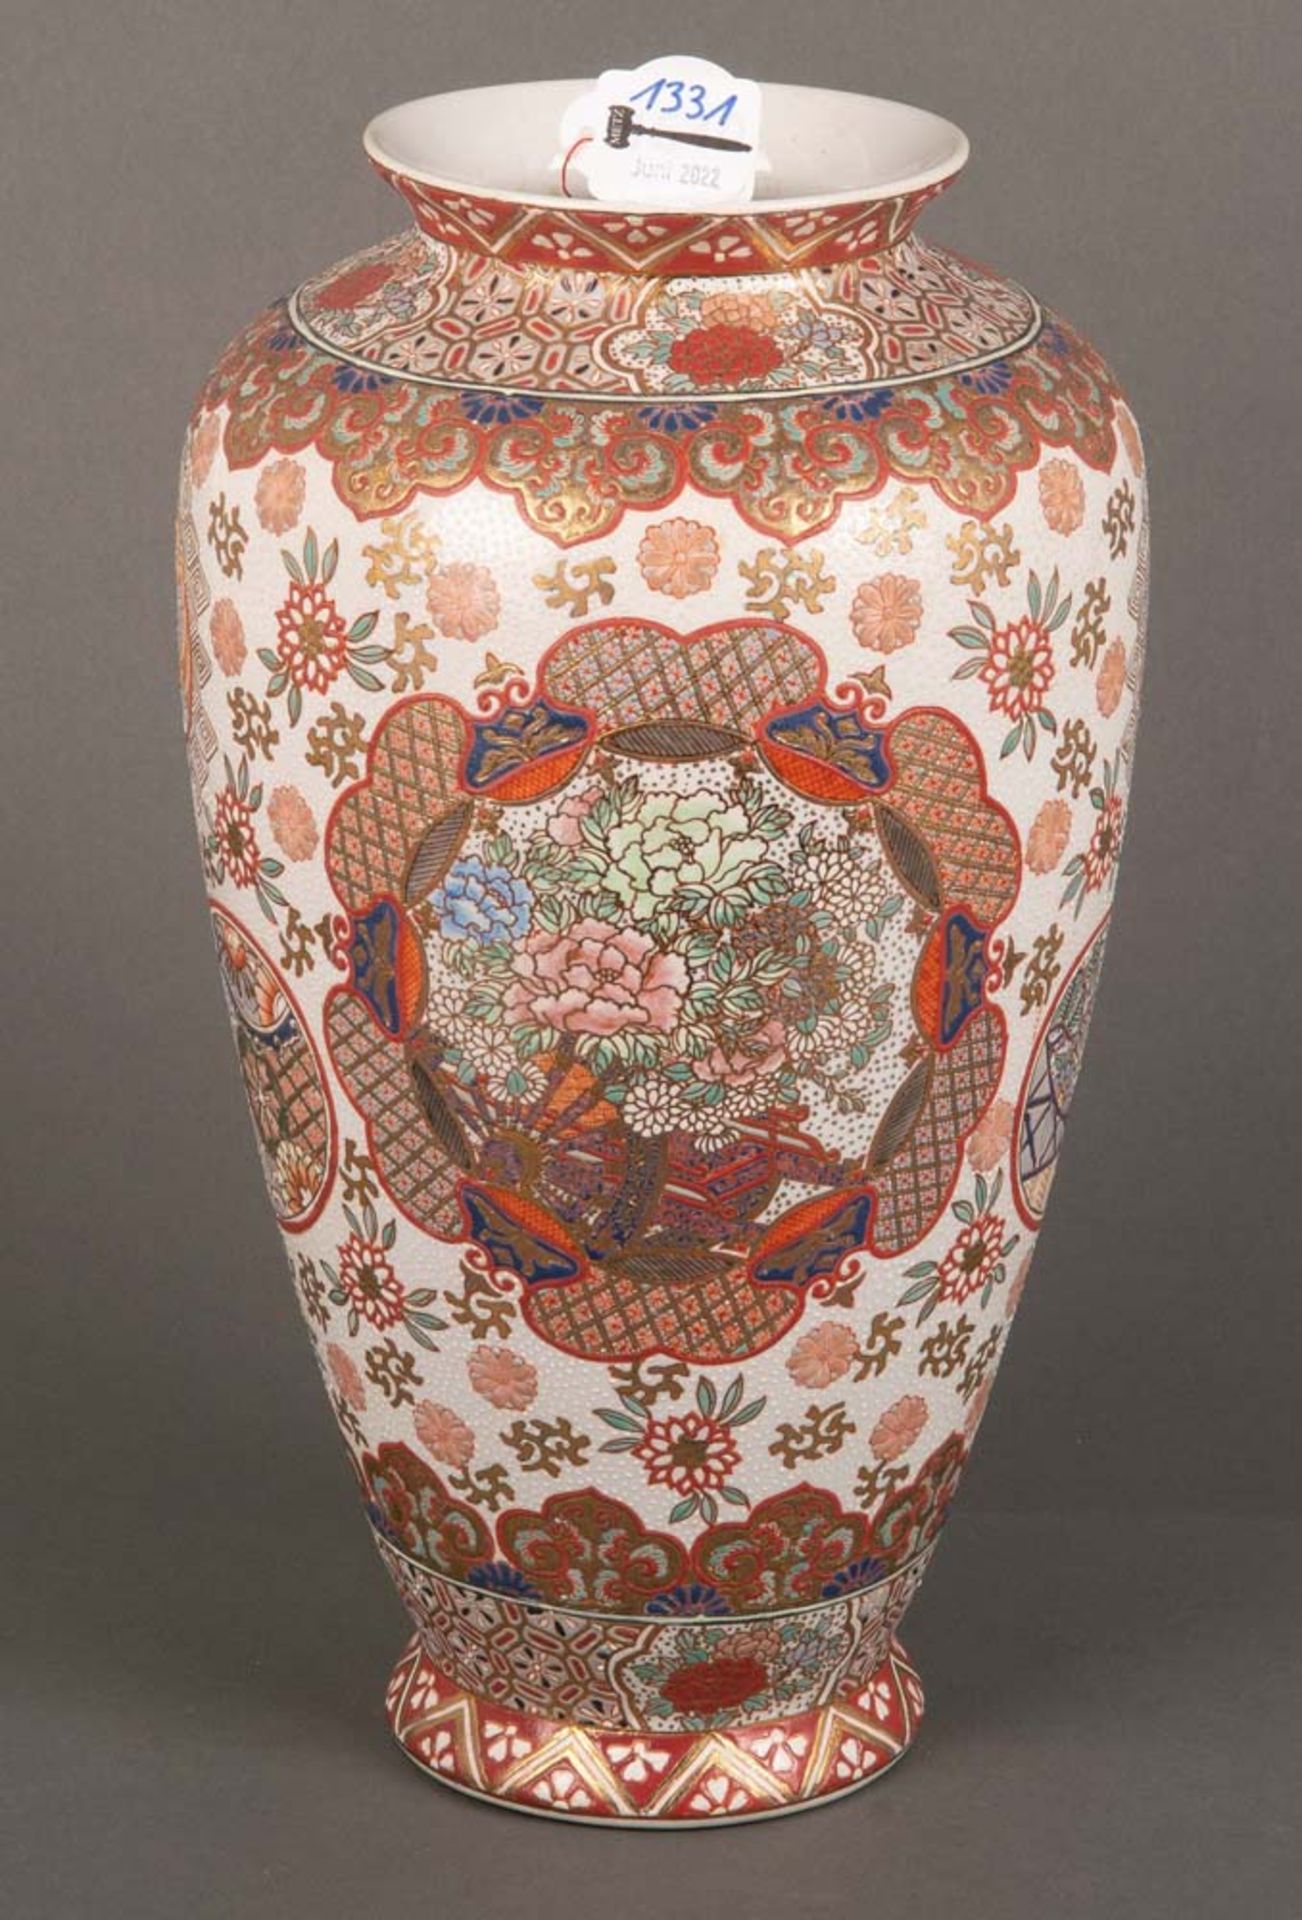 Vase. Asien. Porzellan, bunt bemalt mit Floral- und Golddekor, H=25 cm.